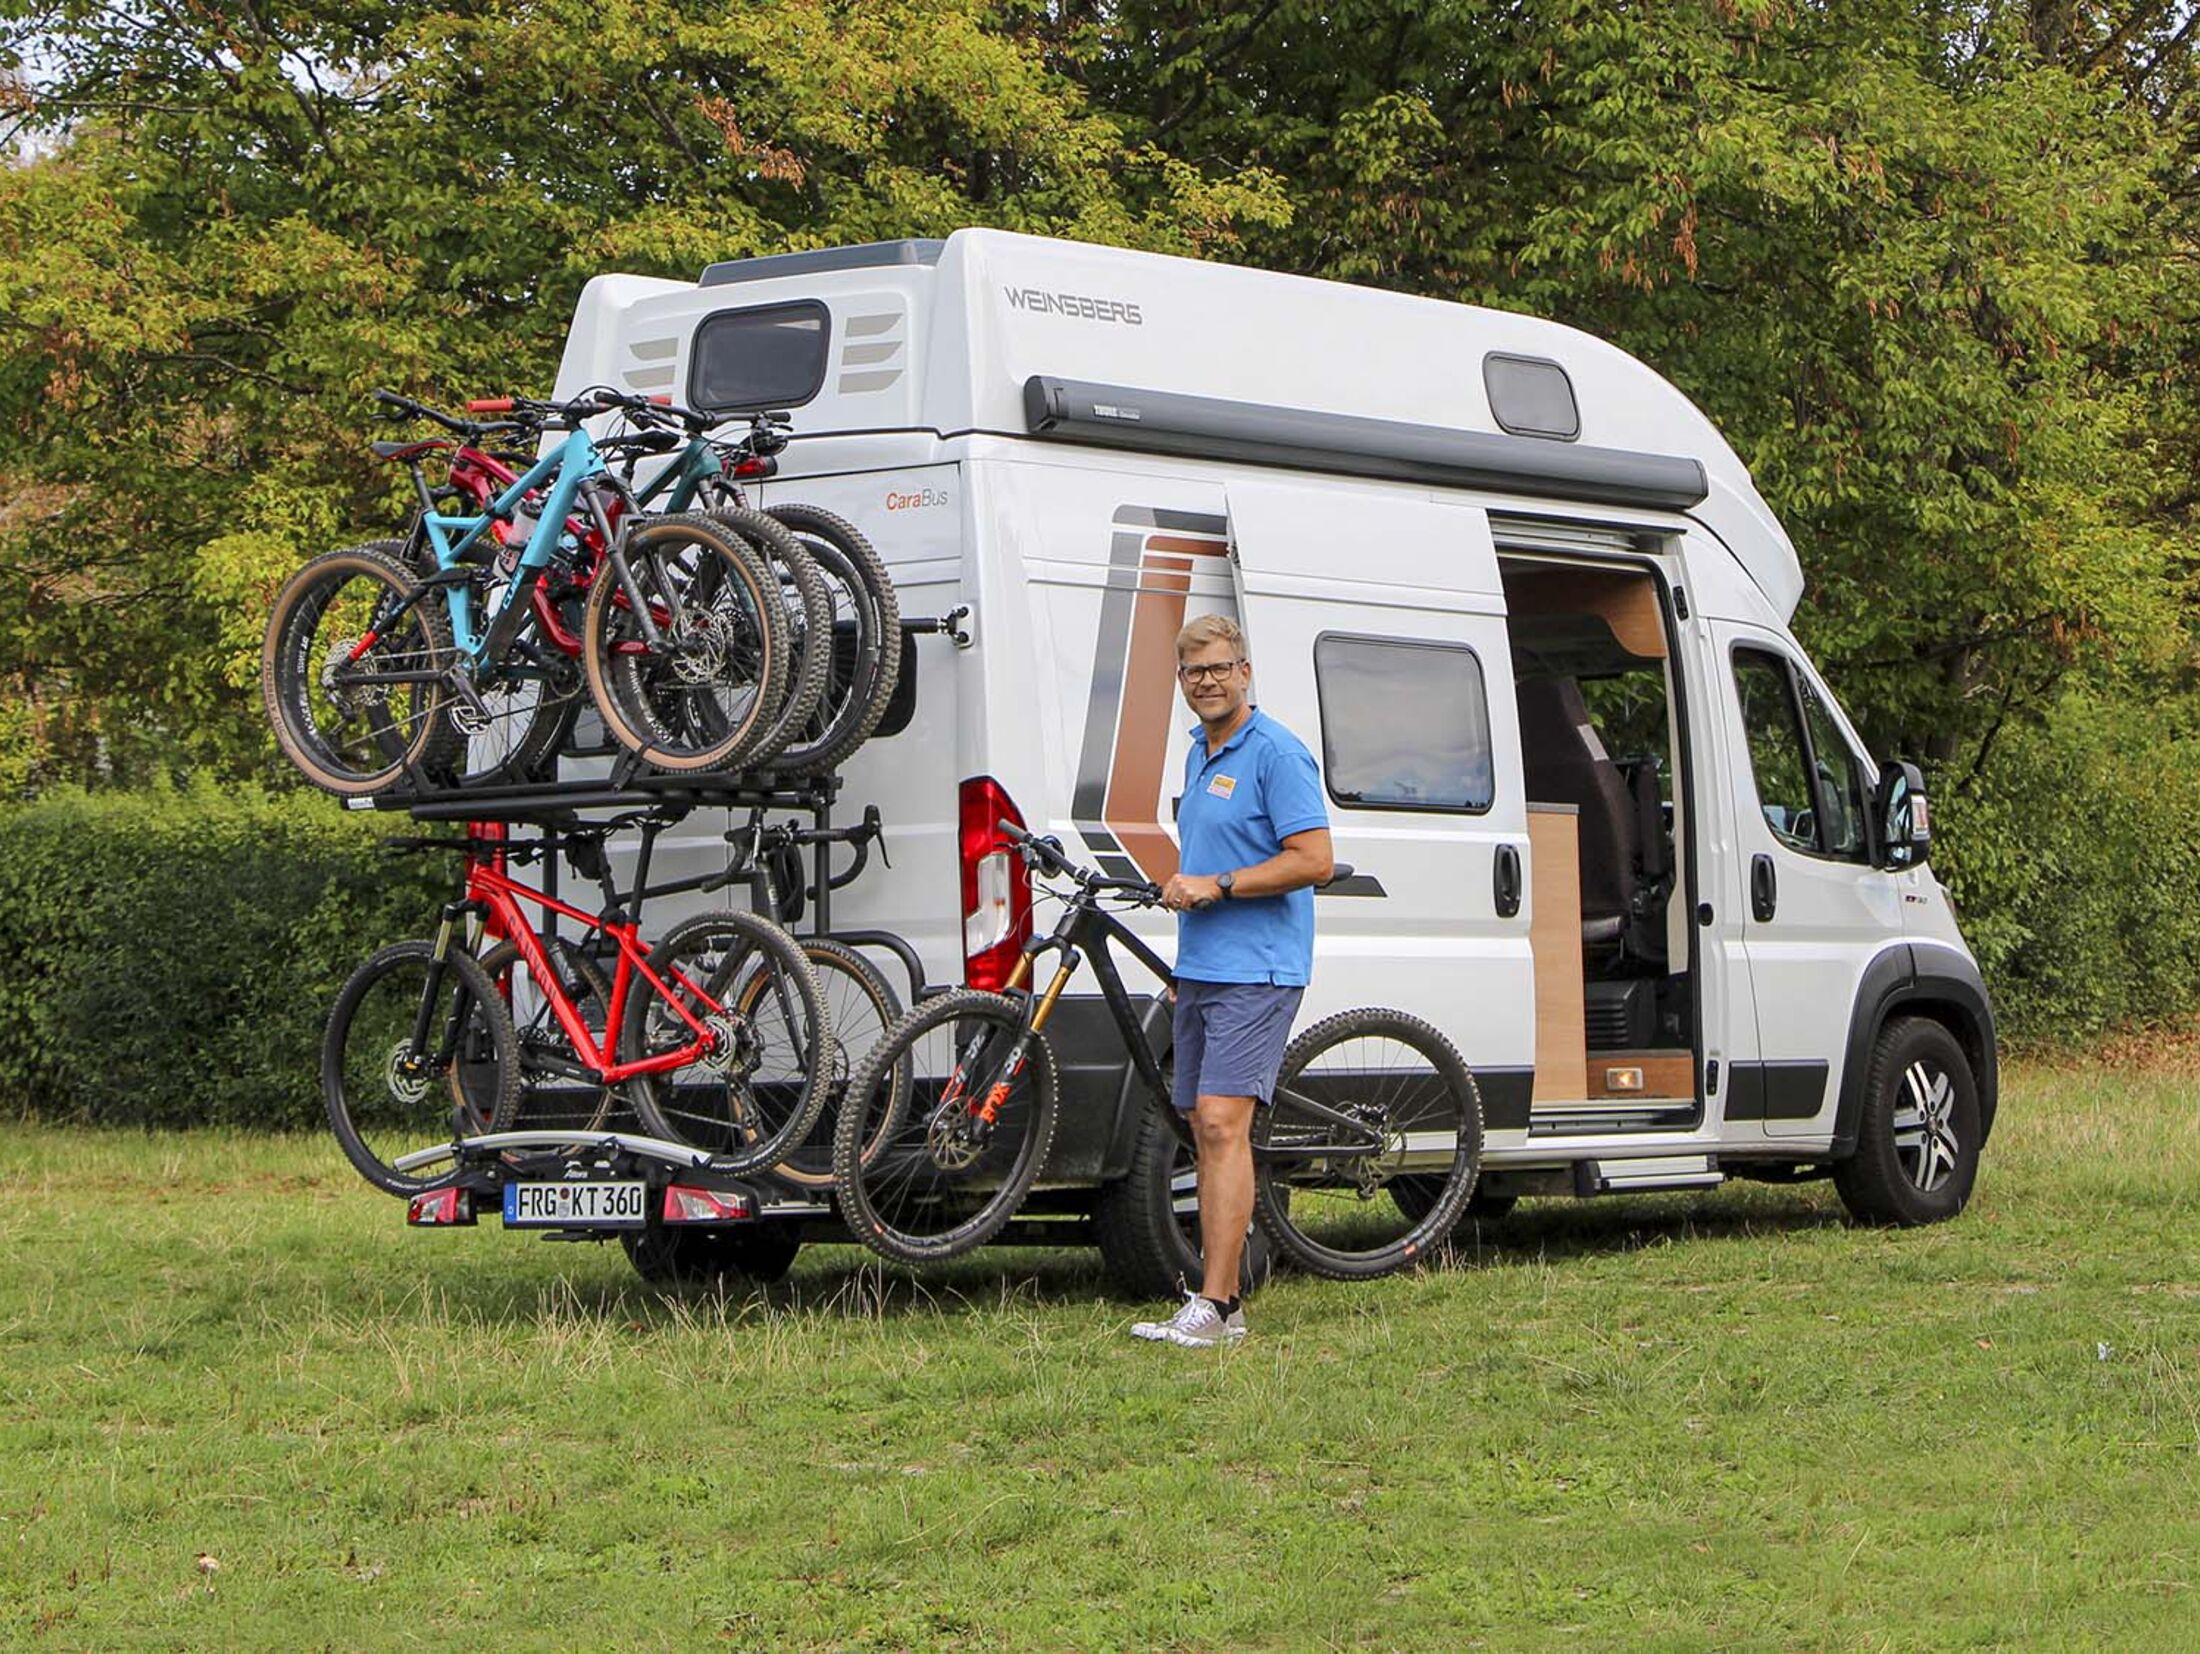 Marktübersicht: Fahrradheckträger für Campingbusse